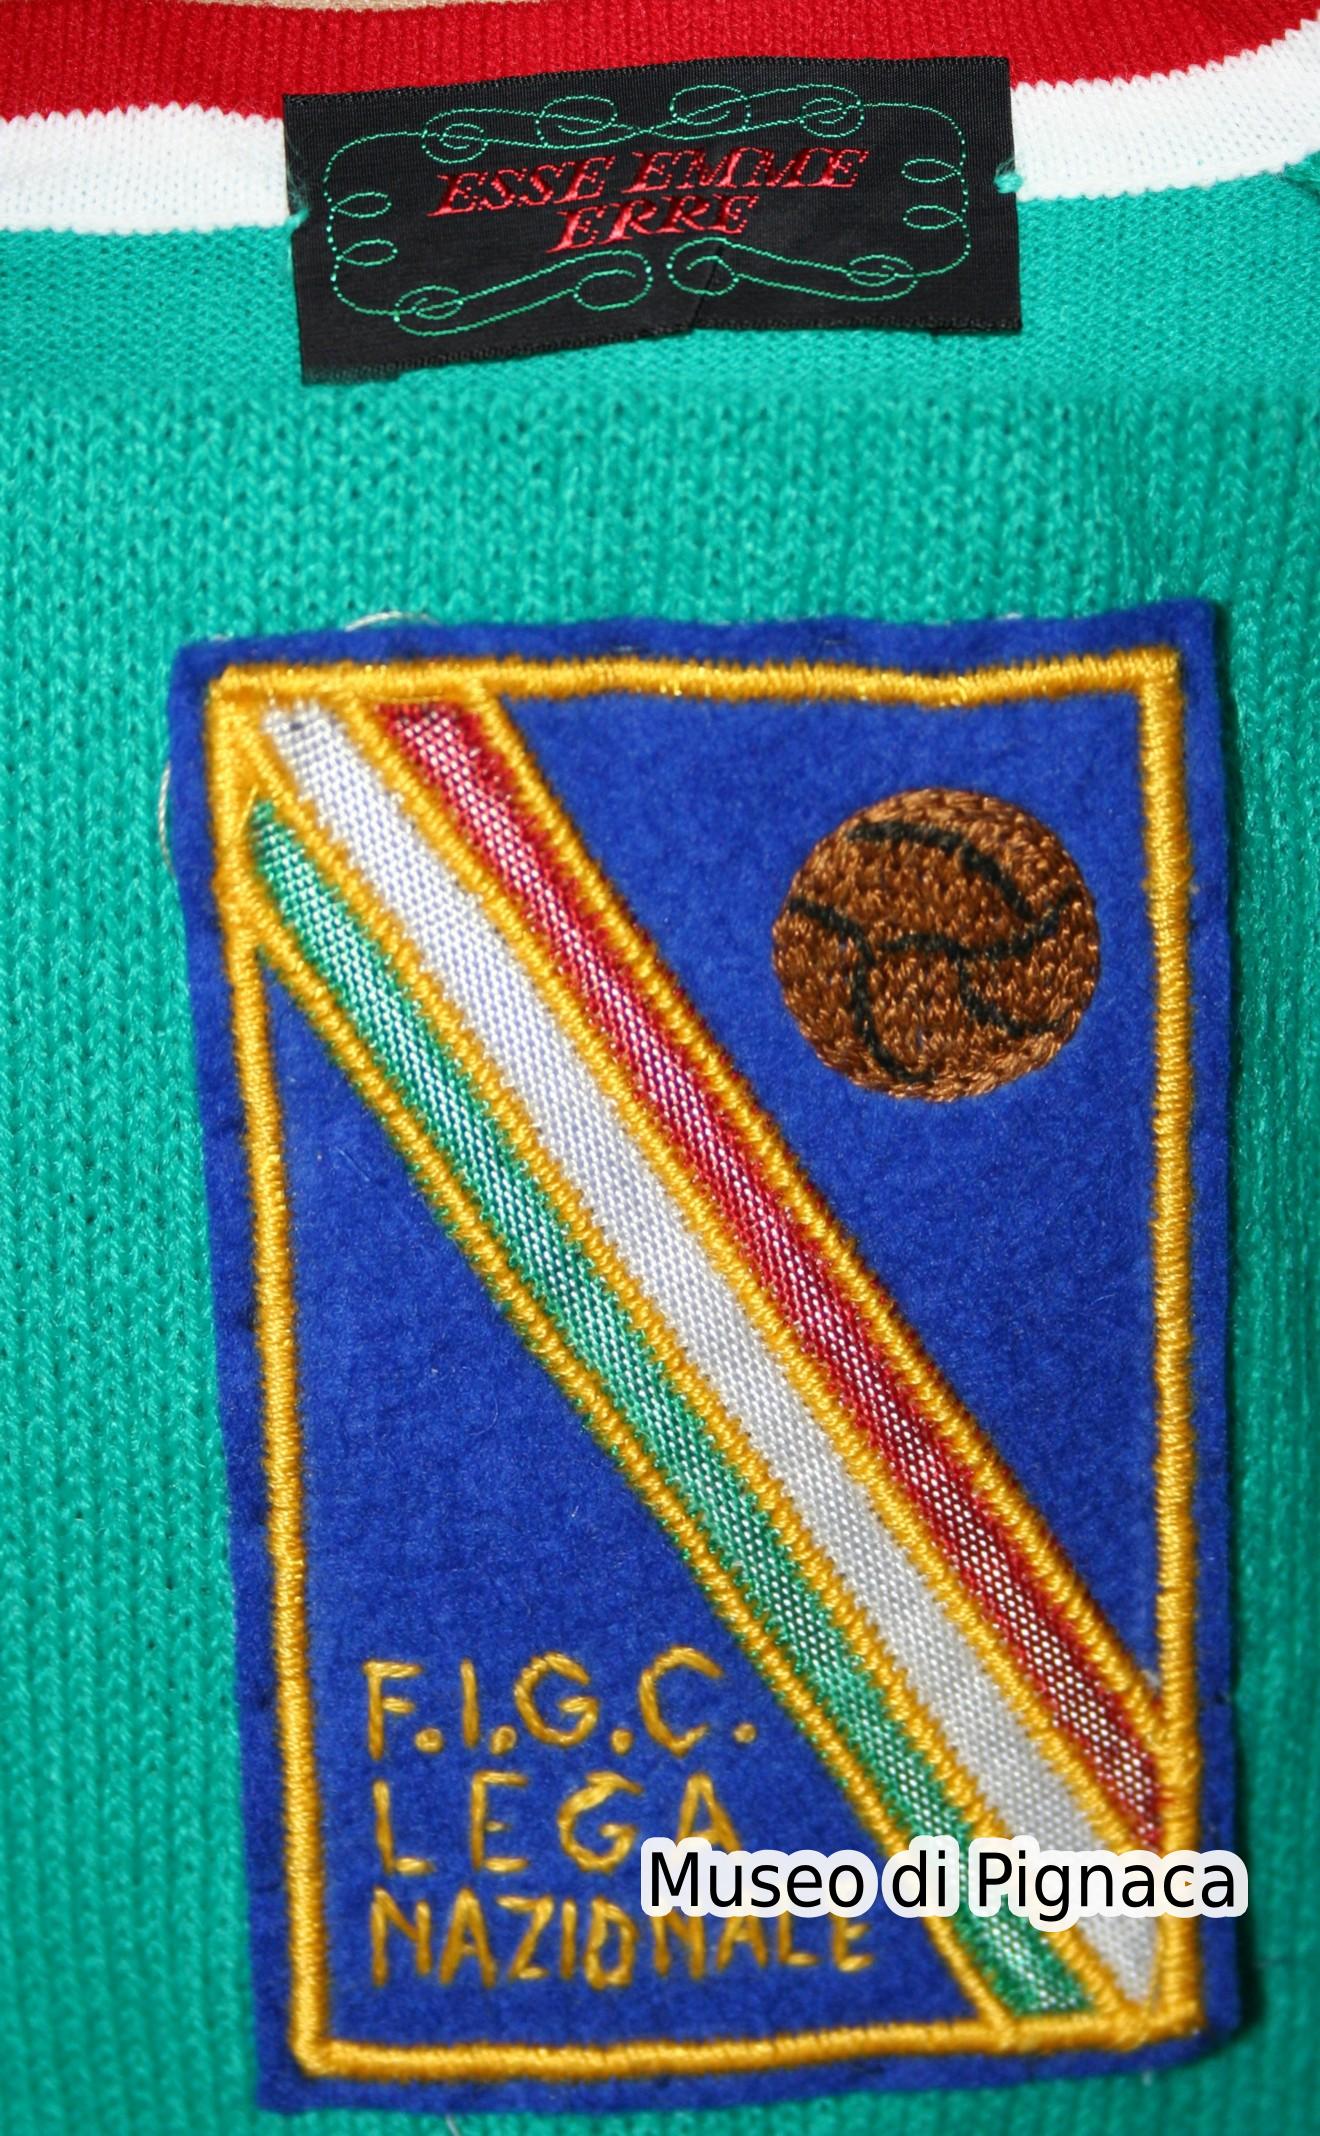 1971 Maglia Lega Nazionale Italiana (dettagli)